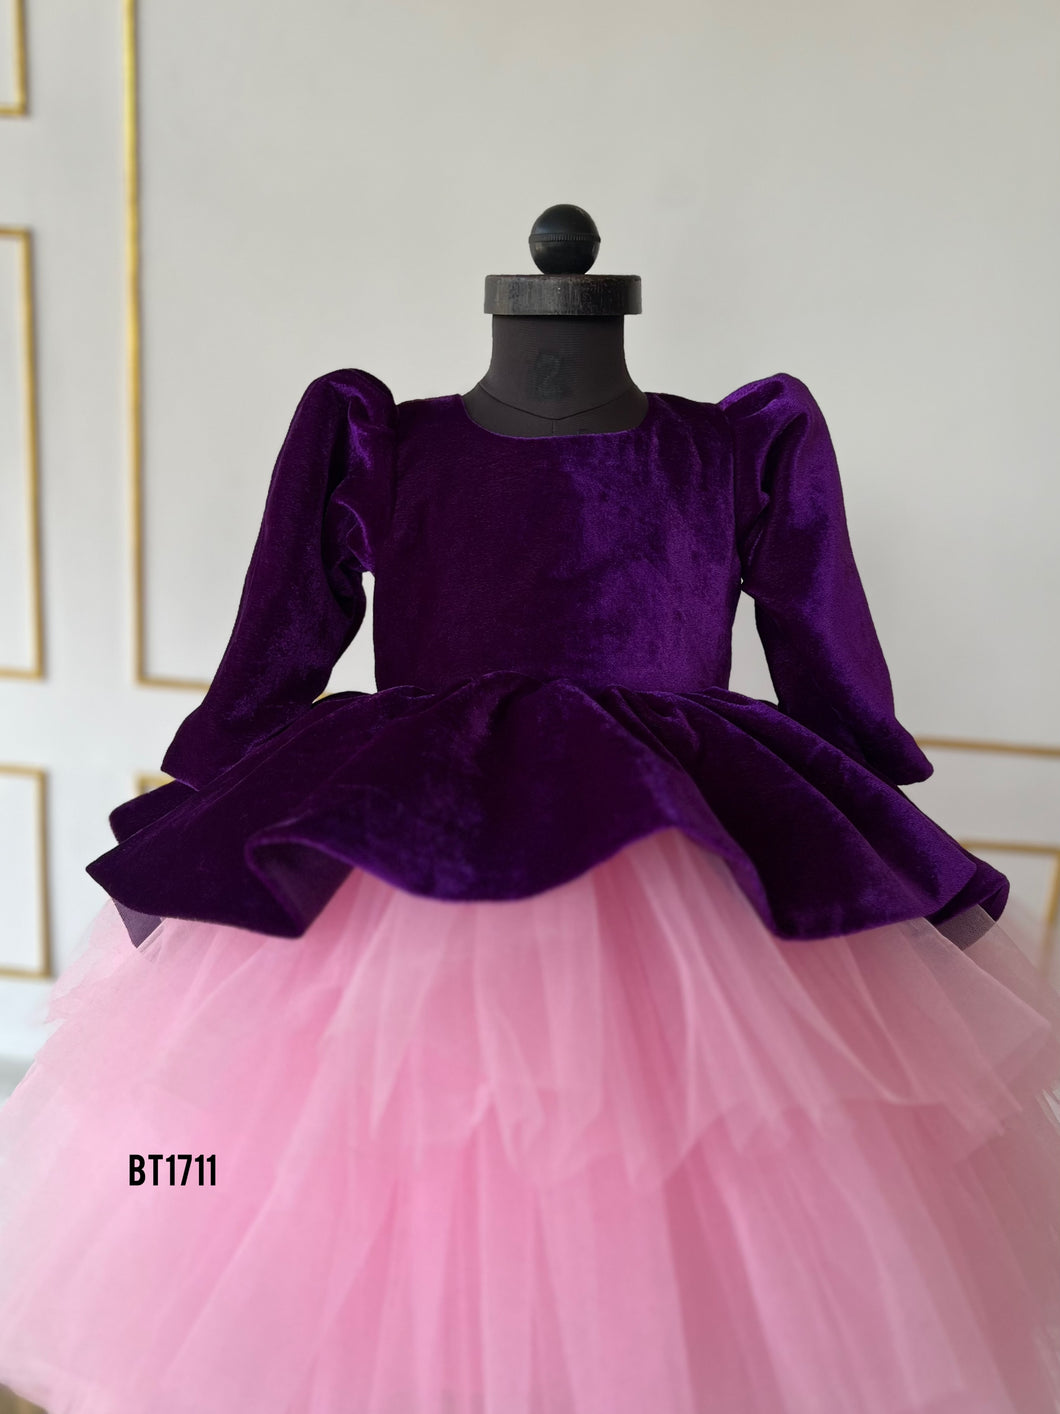 BT1711 Purple Velvet Winter Party Wear For Baby Girls